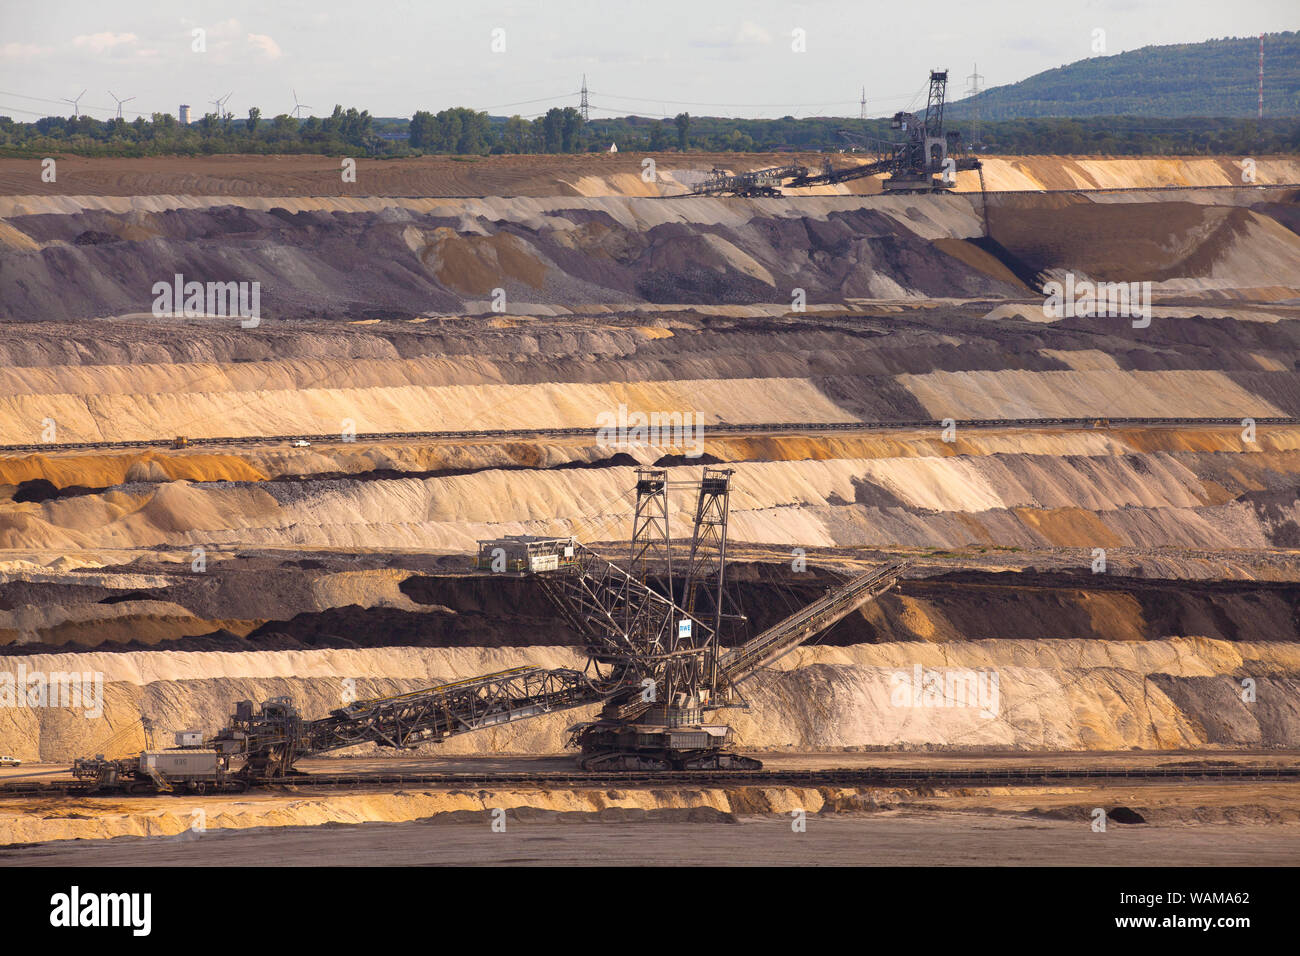 Inden mine de lignite à ciel ouvert près de Juelich, exploité par RWE Power AG, Rhénanie du Nord-Westphalie, Allemagne. Braunkohletagebau Inden bei Juelich, zu R Banque D'Images